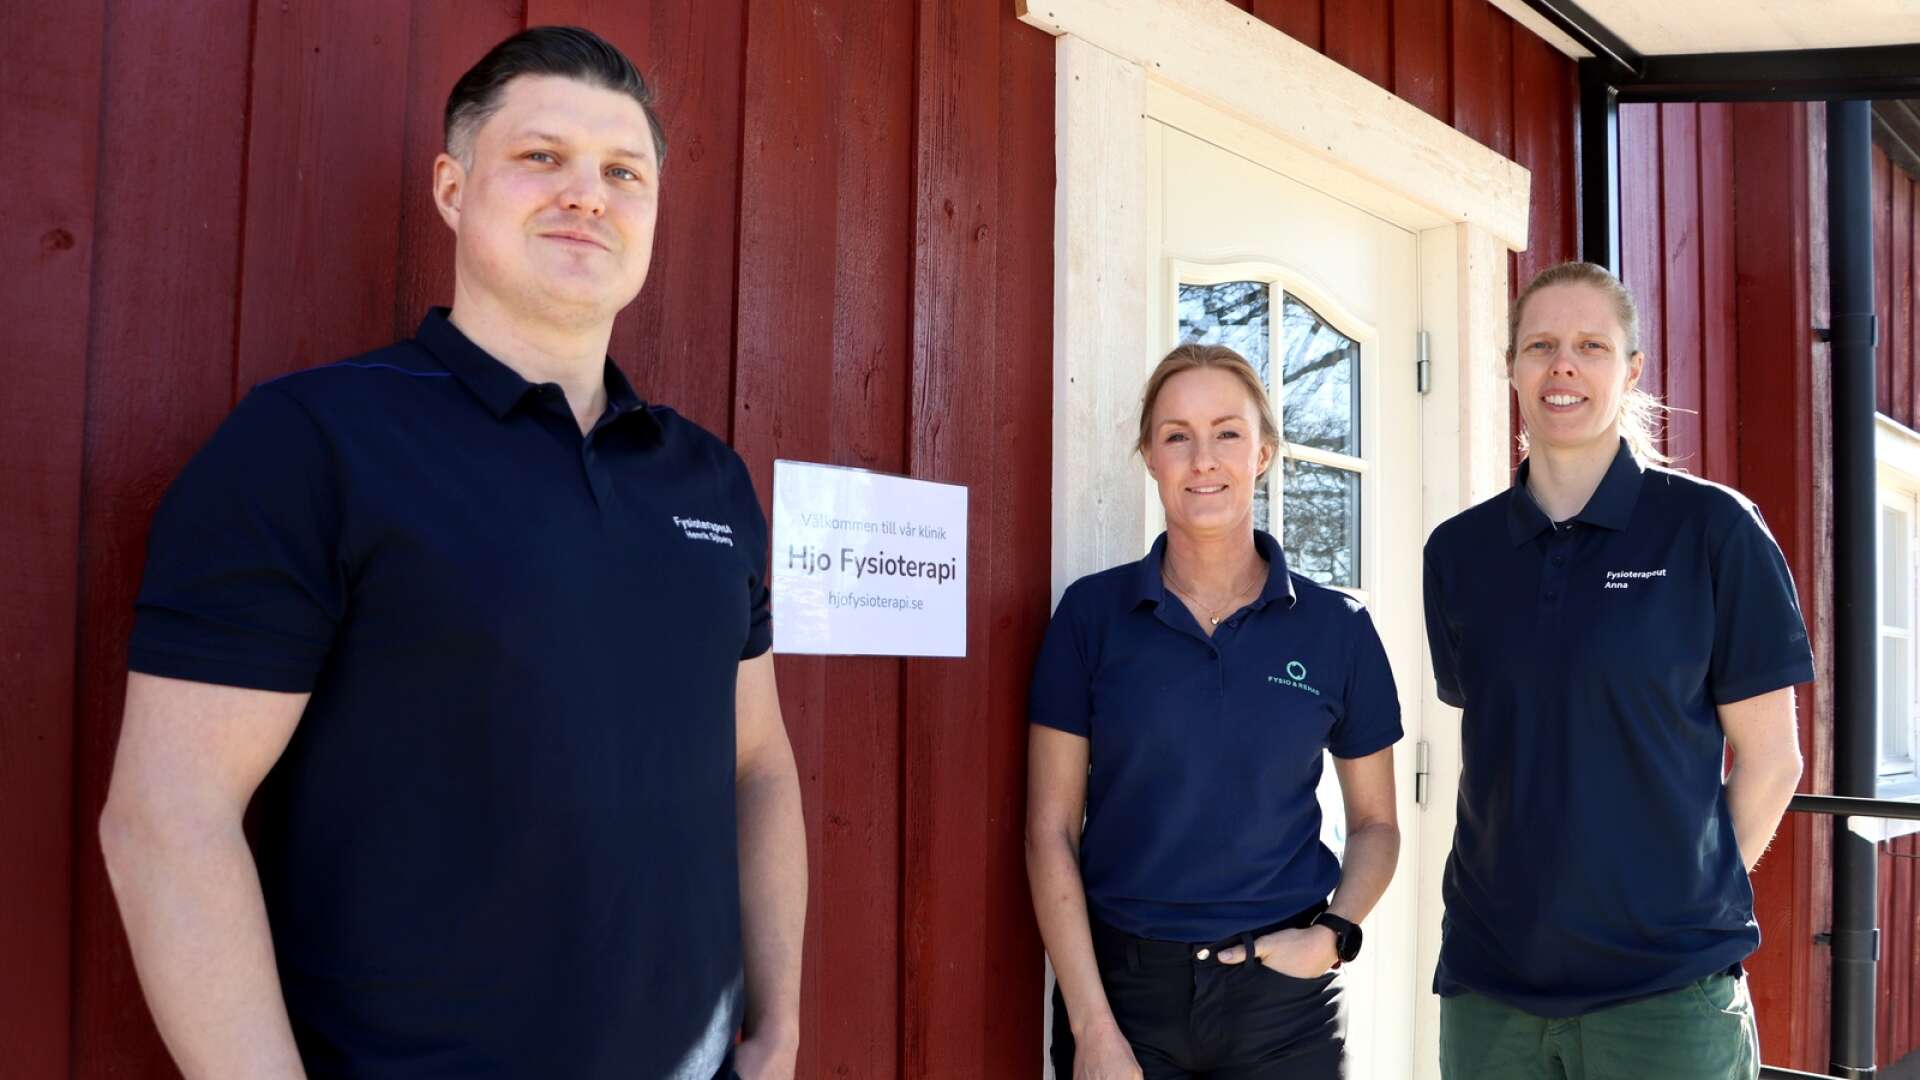 Henrik Sjöberg, Åsa Hedman och Anna Fris Boberg har tillsammans Hjo fysioterapi med mottagning för undersökning, behandling och rehabilitering.